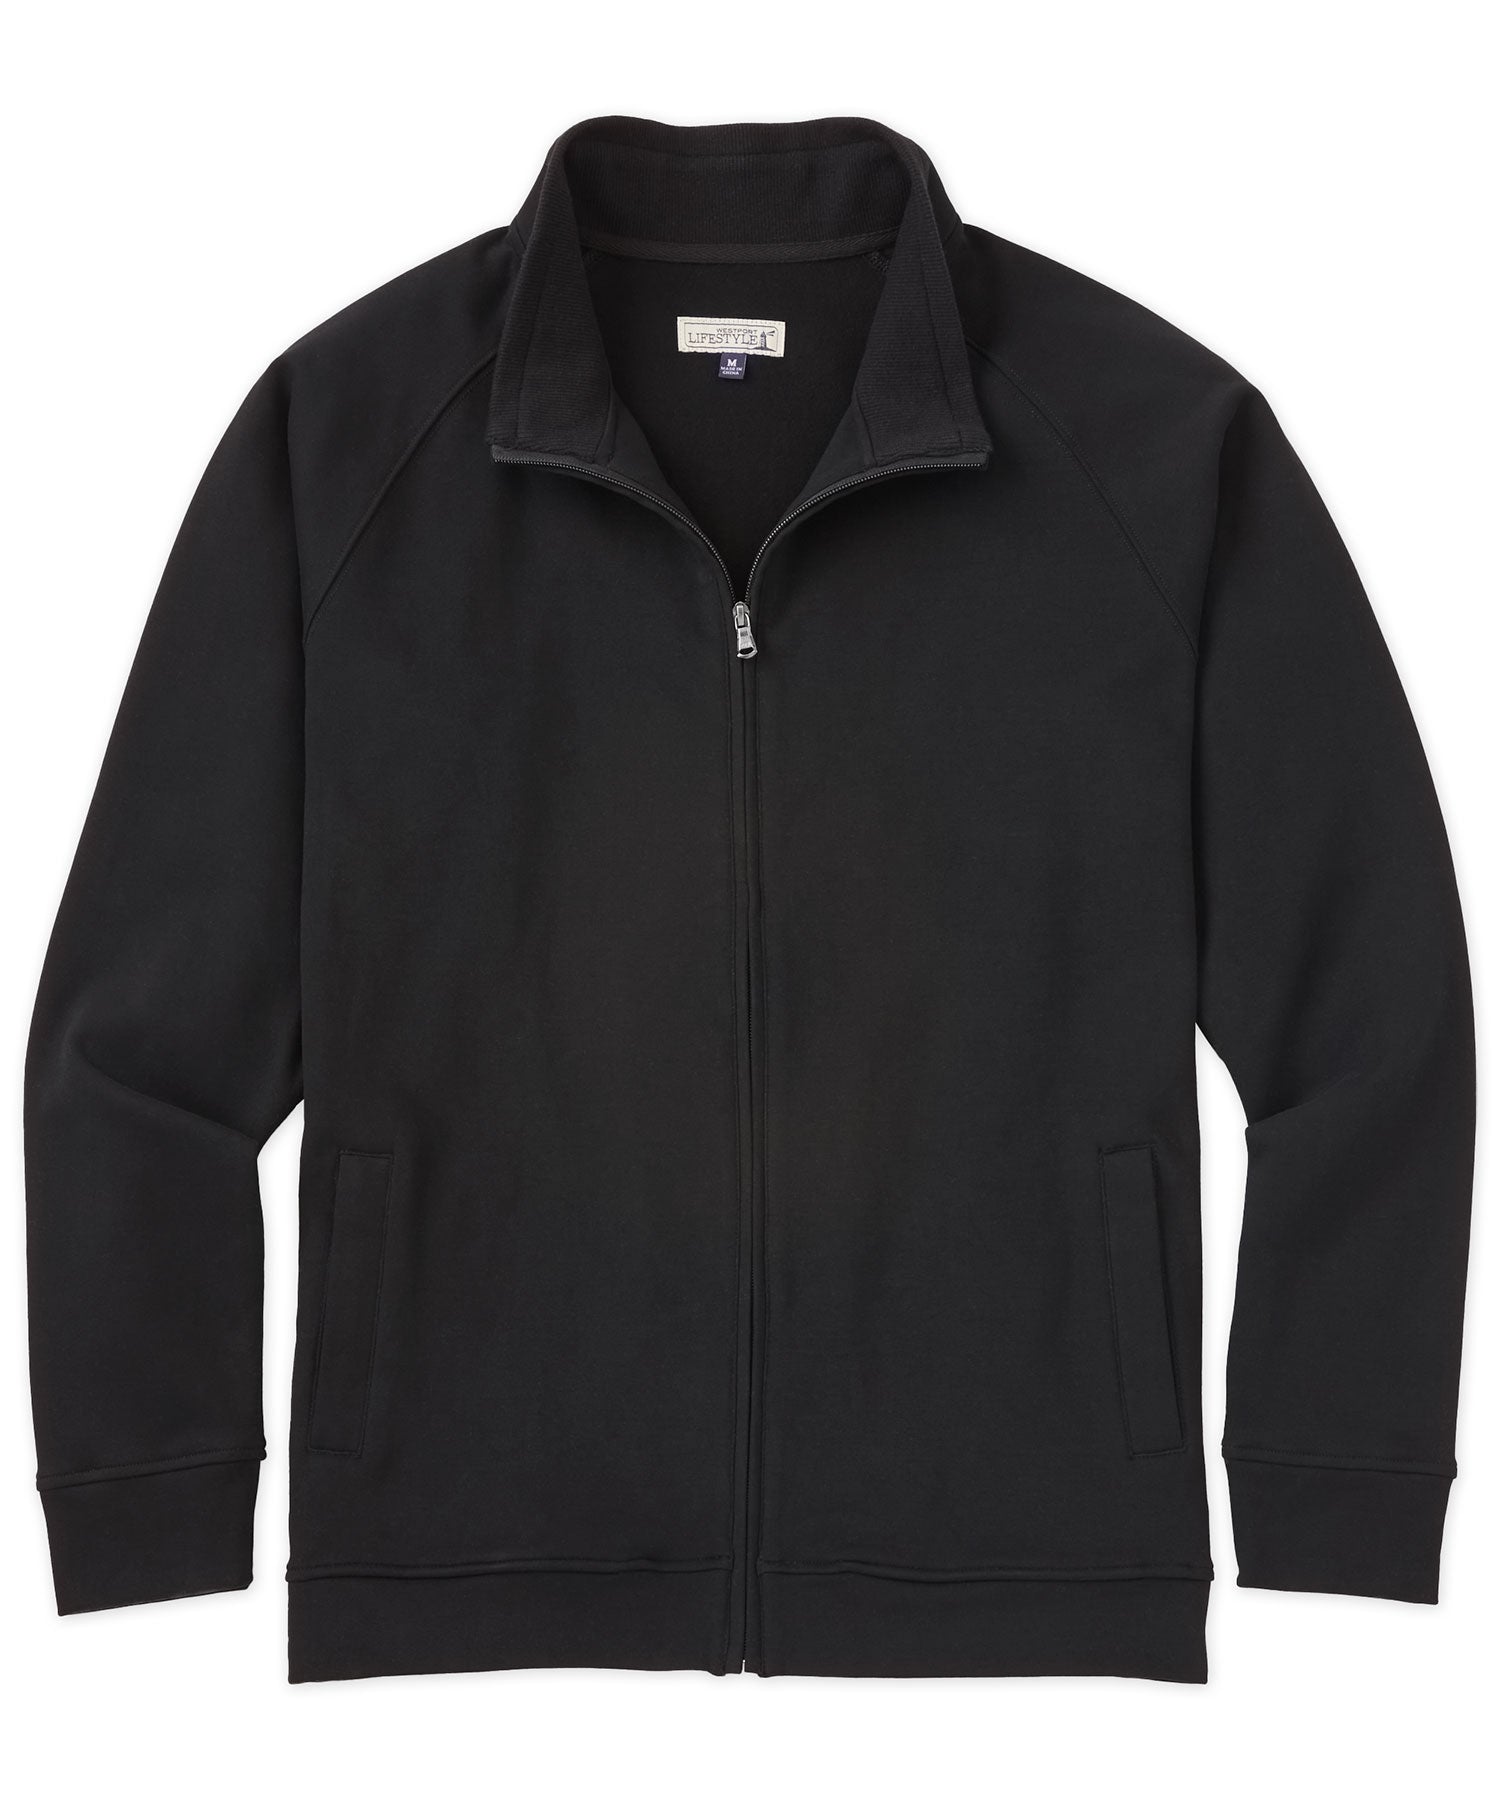 Westport Lifestyle Luxe Fleece Full-Zip Jacket